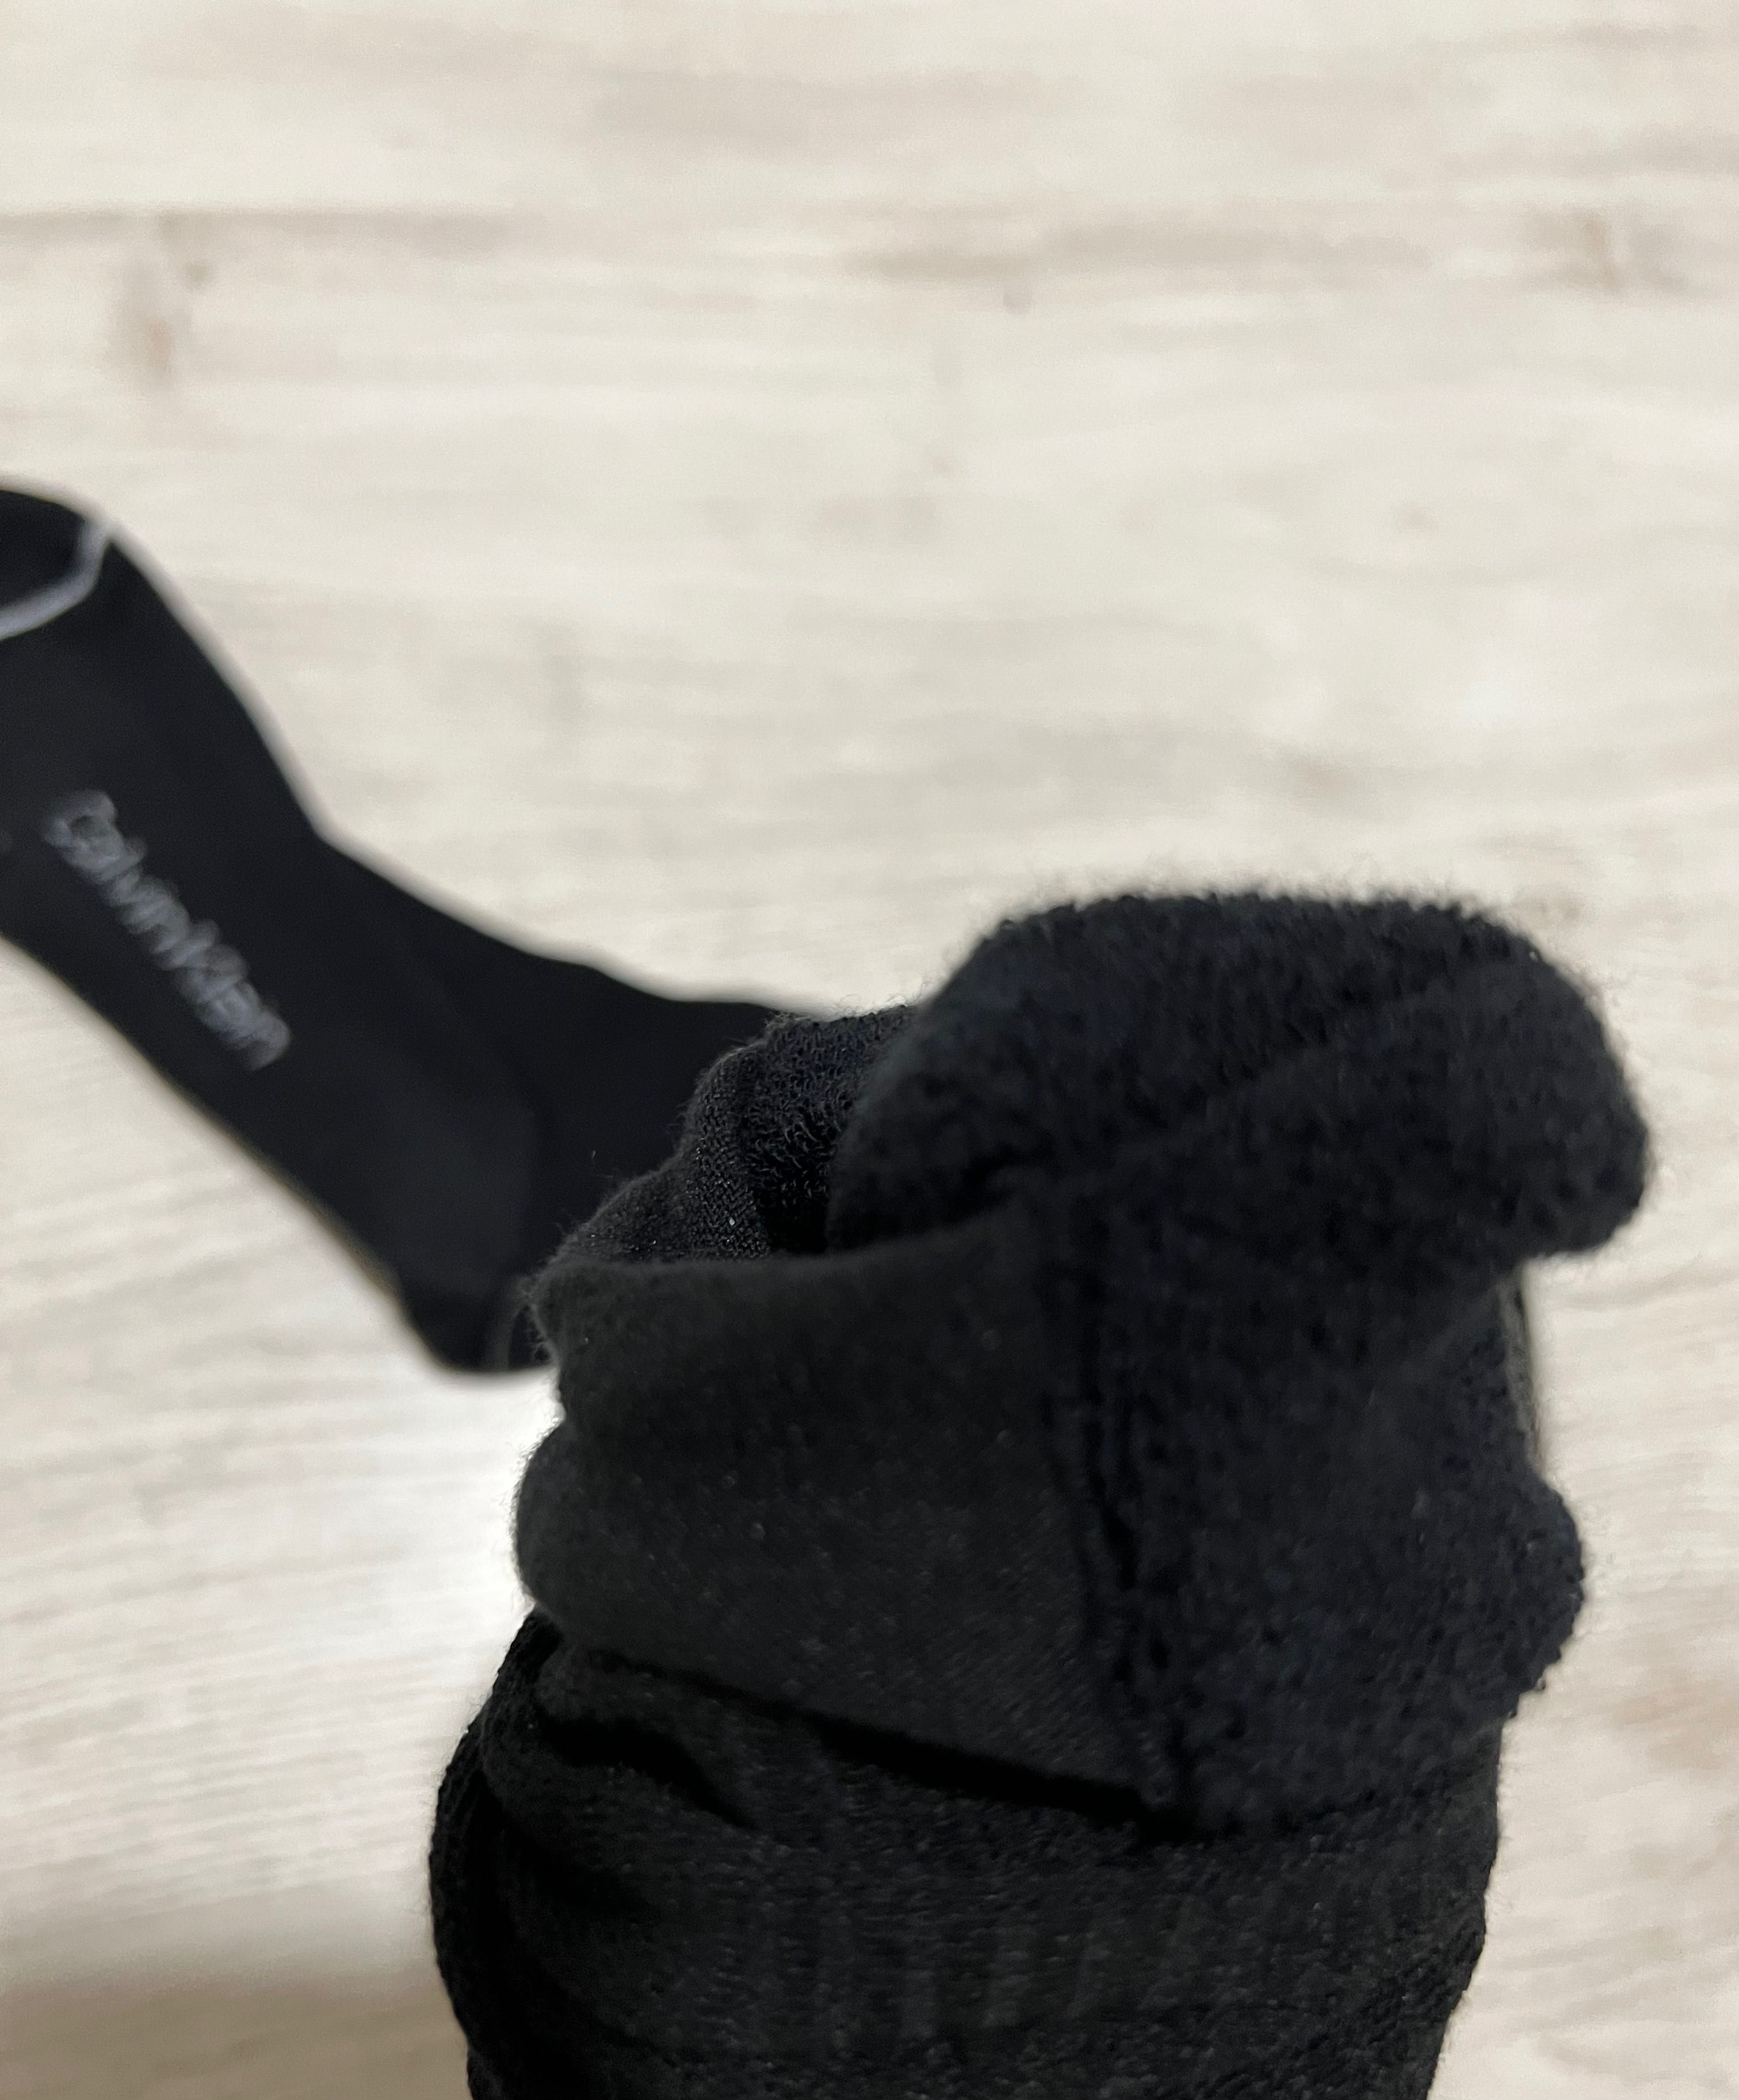 Носки Calvin Klein, тёплые носки, 42-46, оригинальные